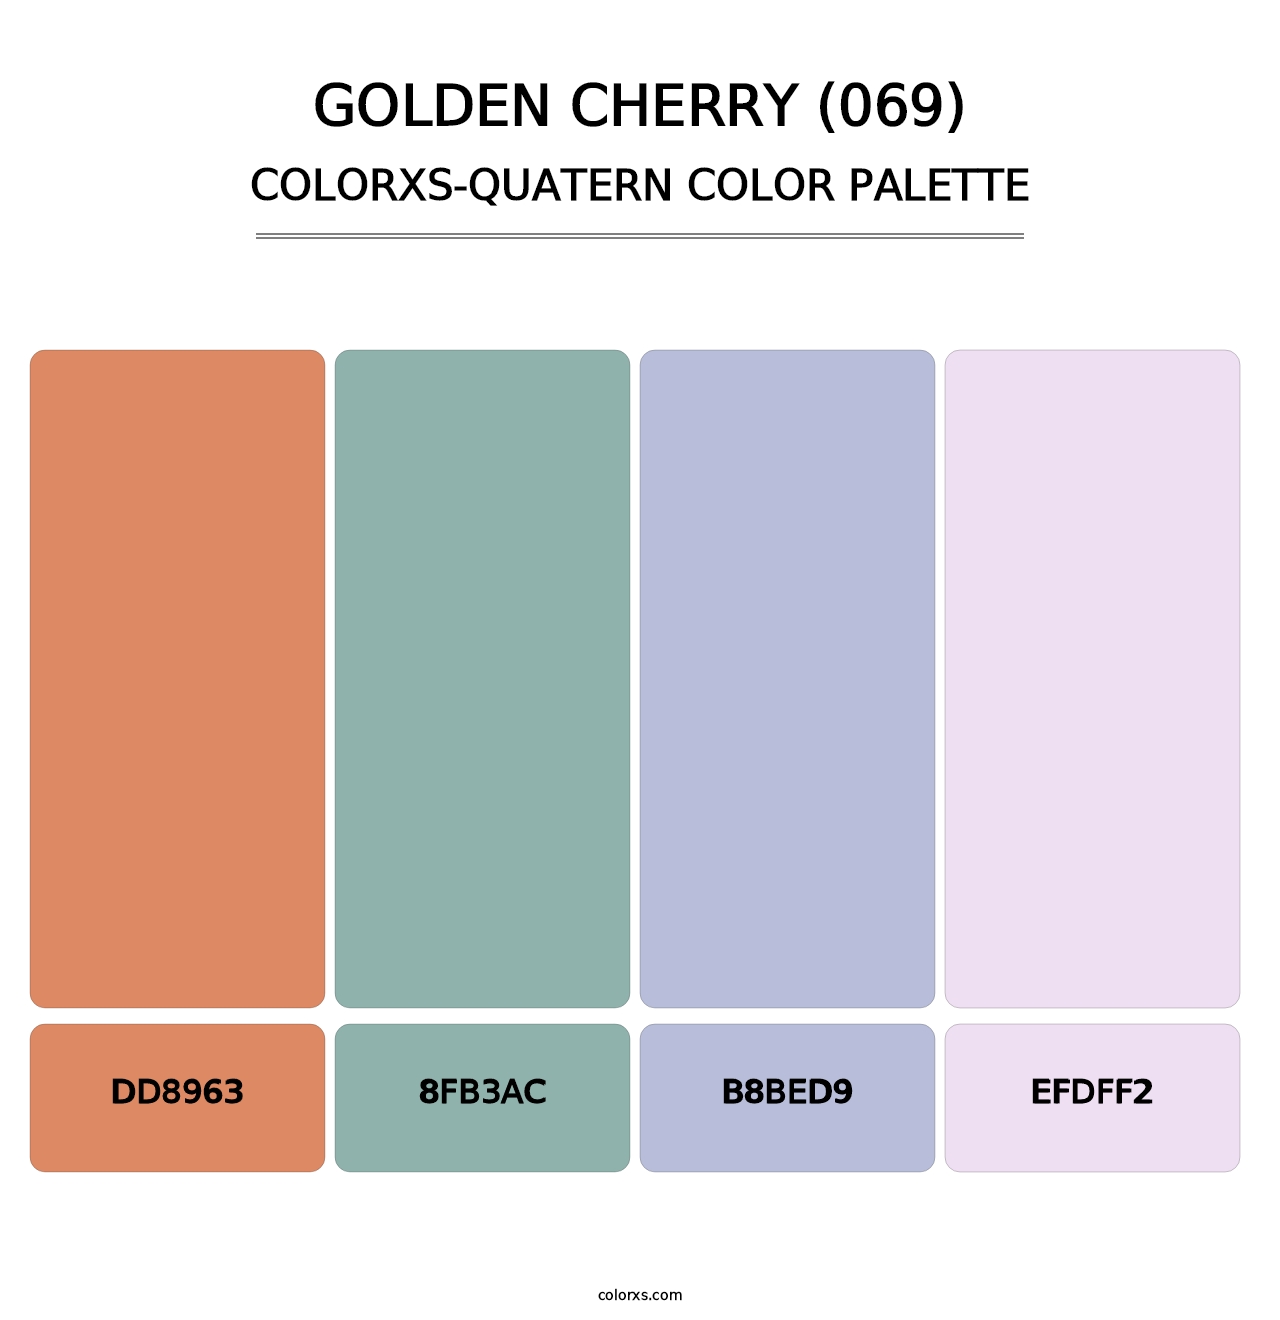 Golden Cherry (069) - Colorxs Quatern Palette